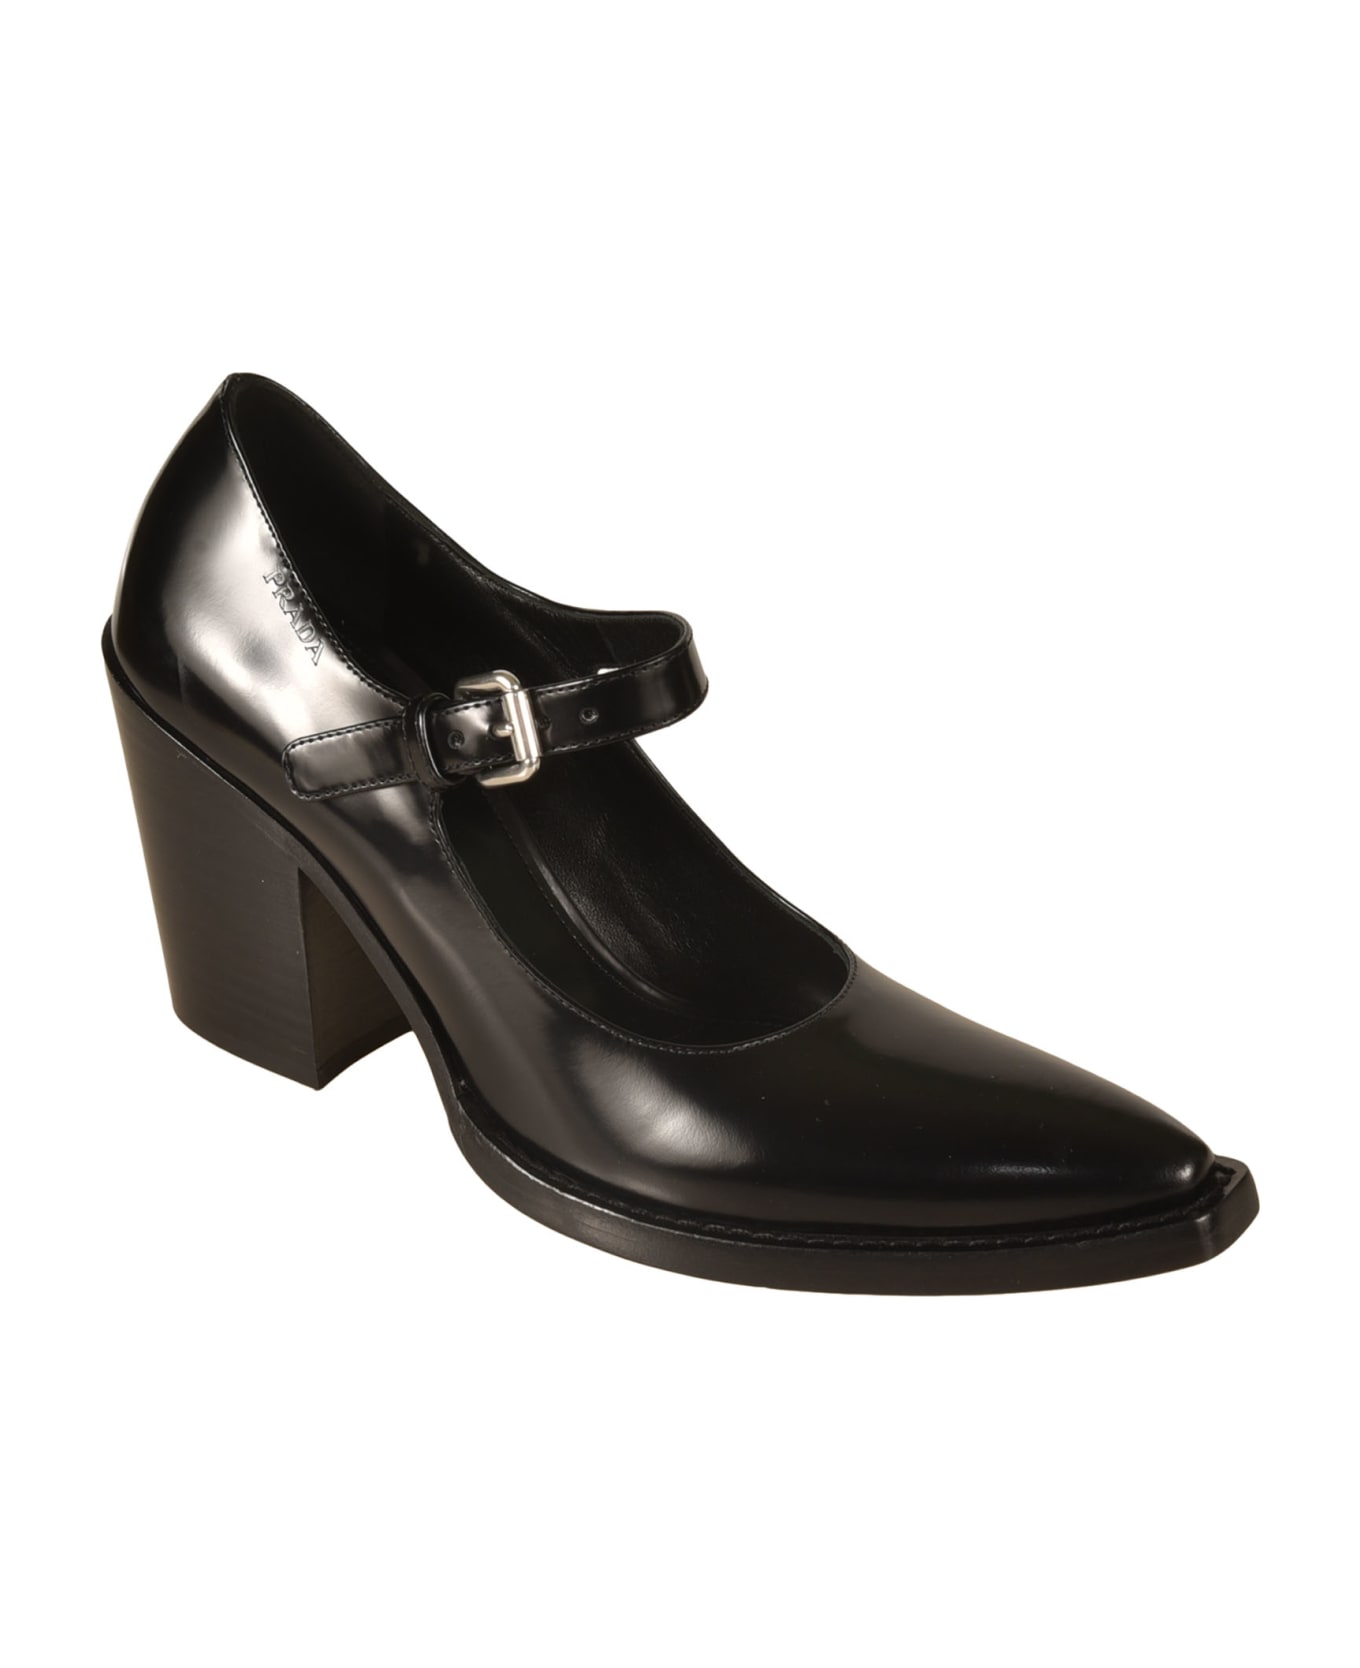 Prada Pointed Toe Block-heel Pumps - Black